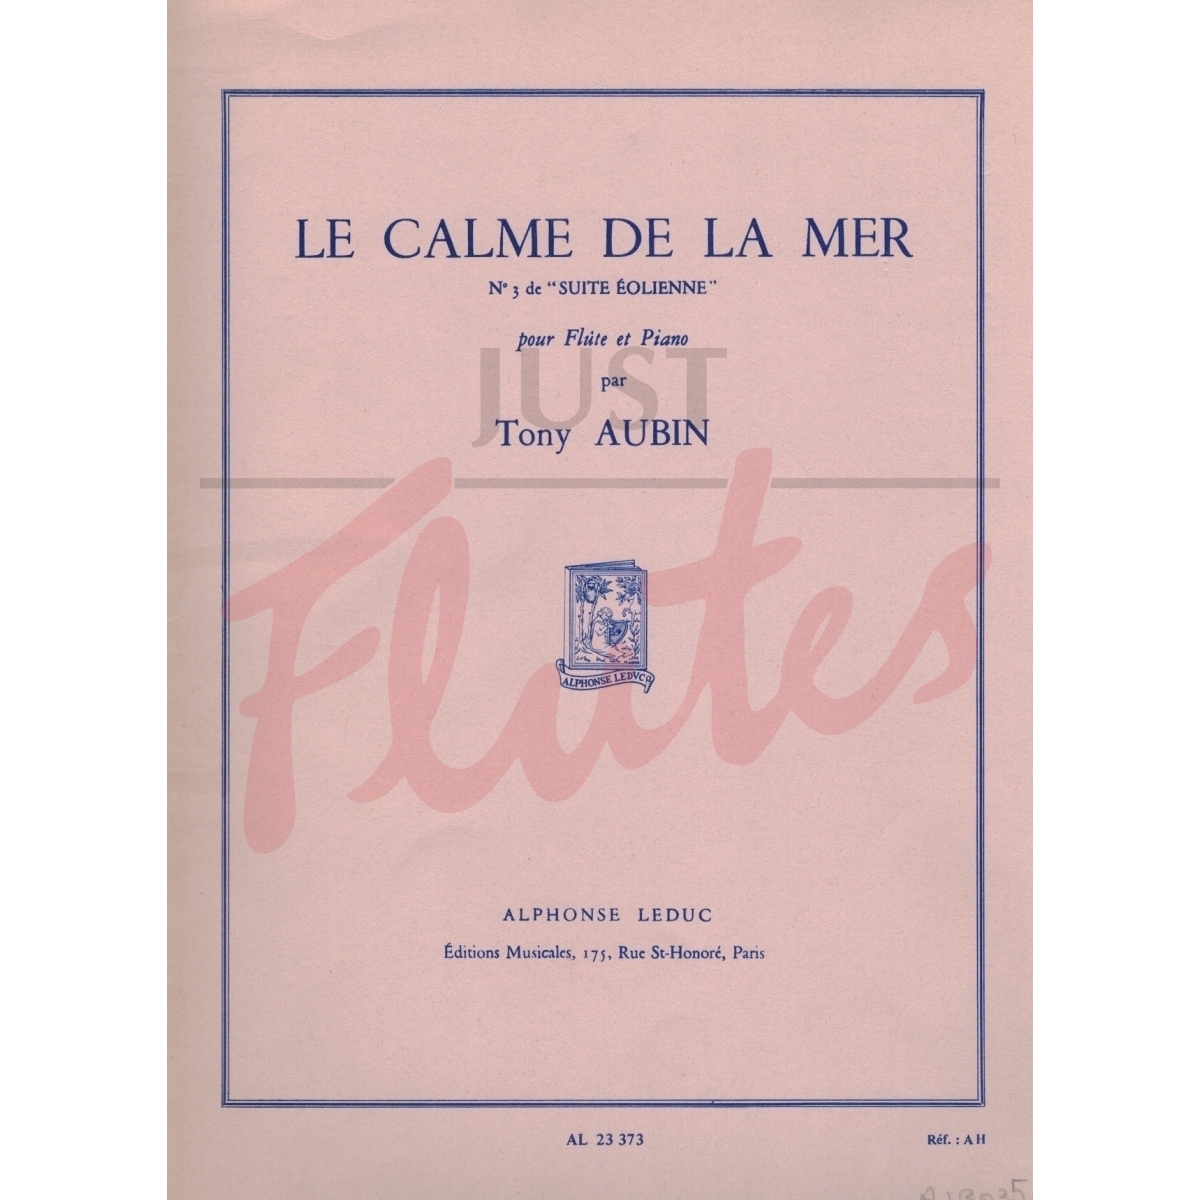 Le Calme de la Mer for Flute and Piano